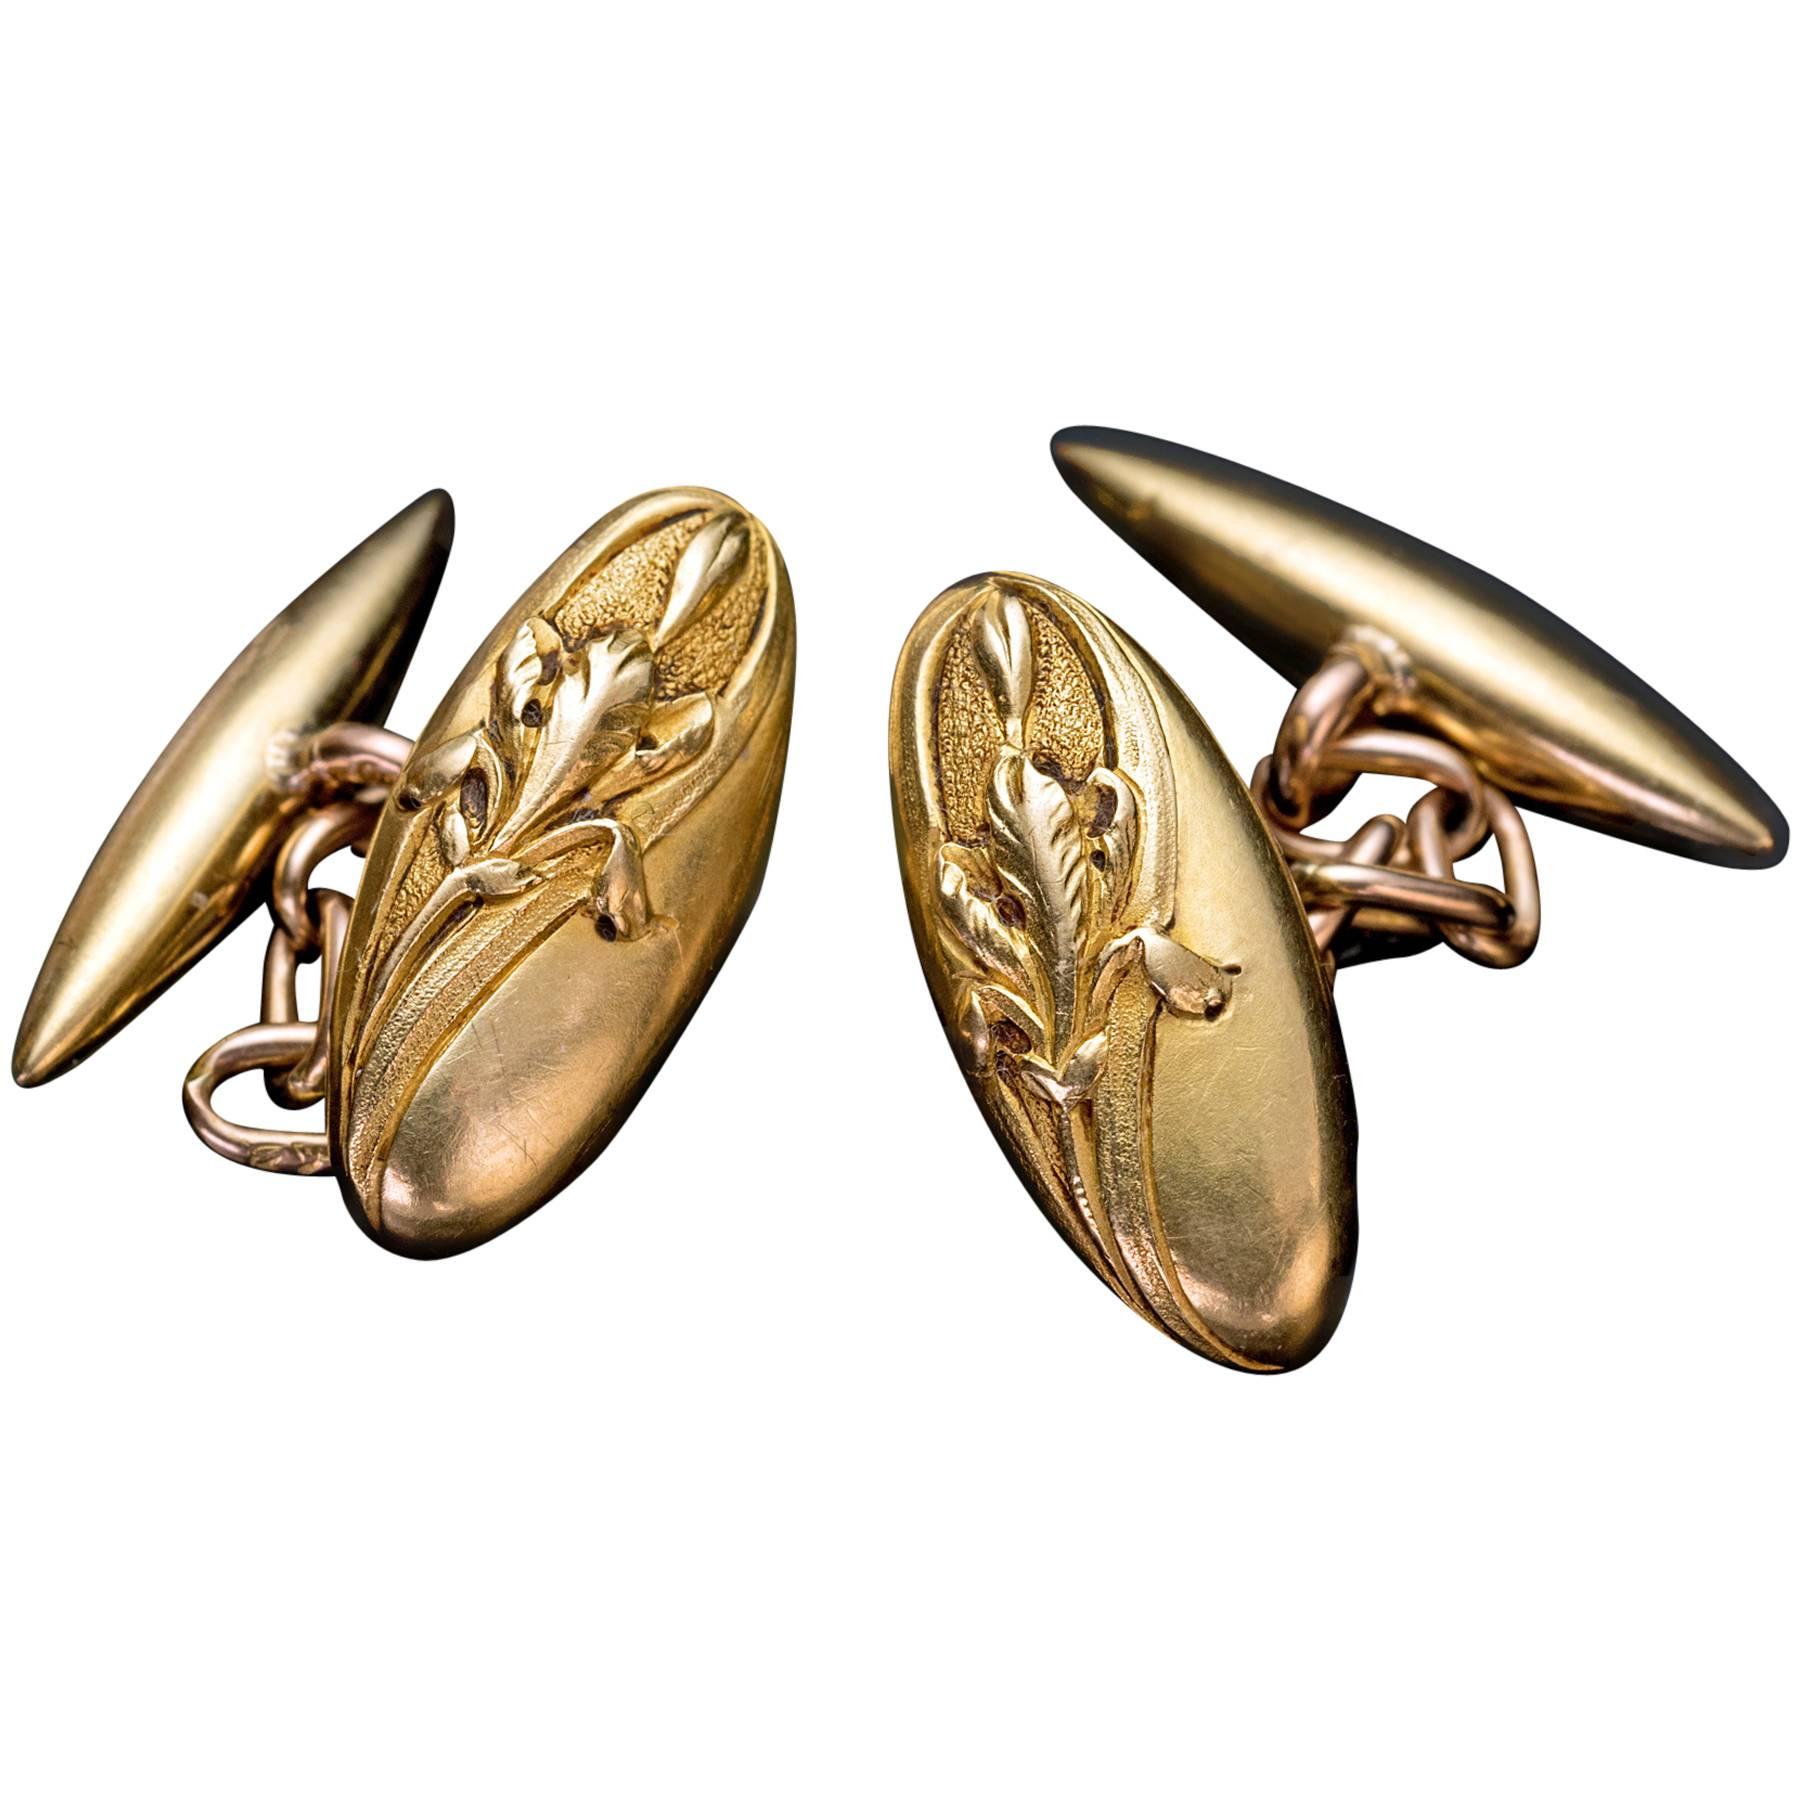 French Antique Art Nouveau Gold Cufflinks